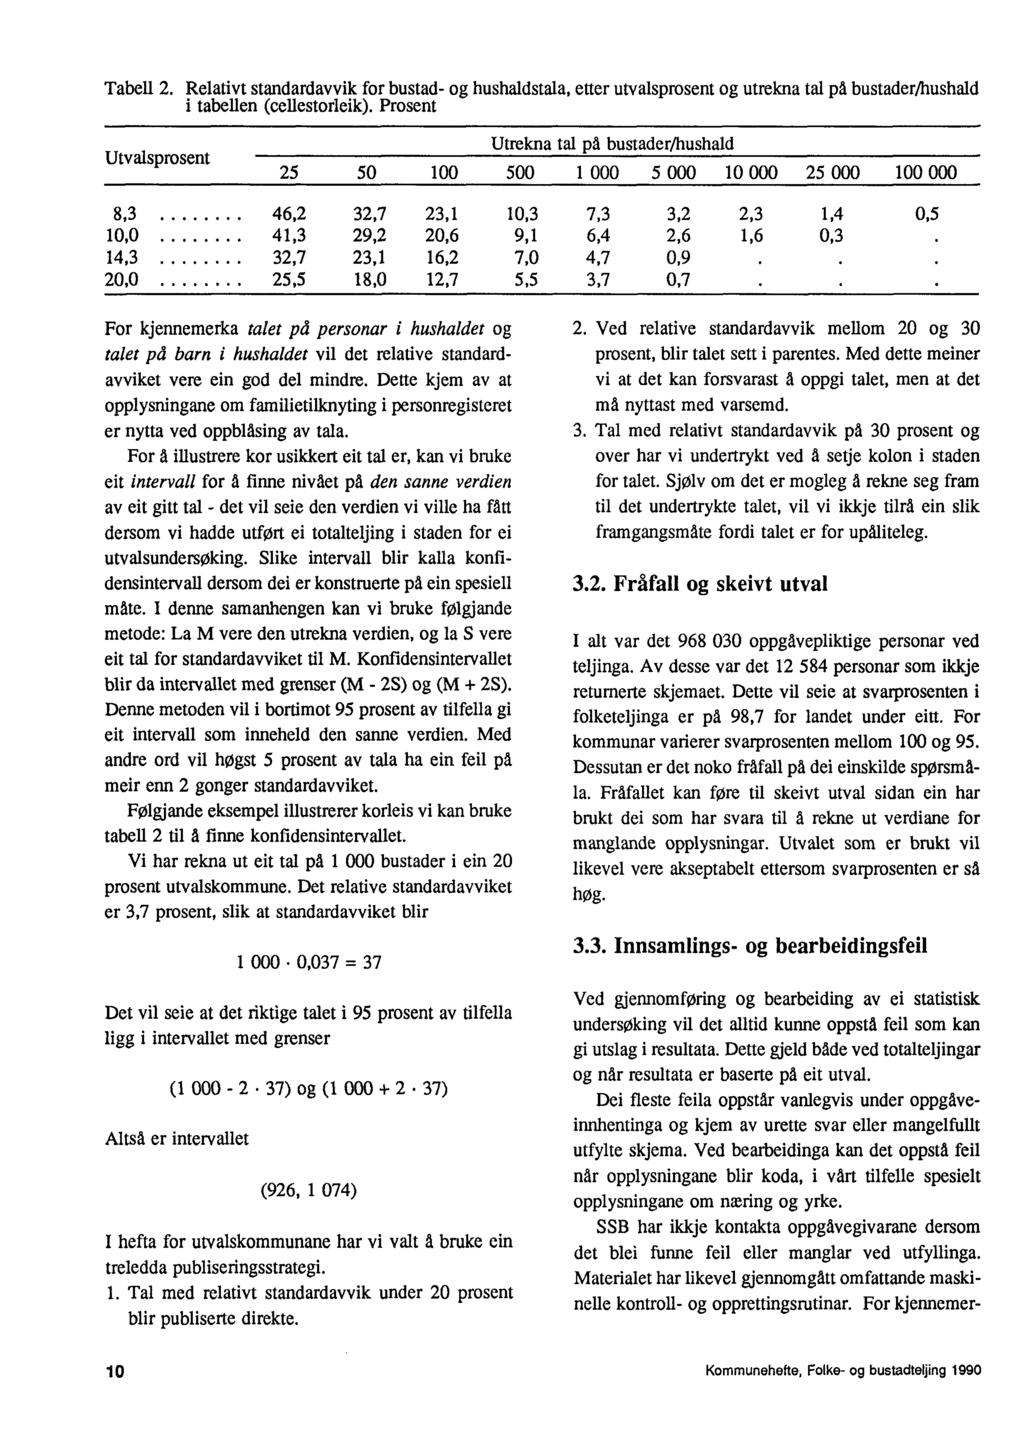 Tabell 2. Relativt standardavvik for bustad- og hushaidstala, etter utvalsprosent og utrekna tal pd bustader/hushald i tabellen (cellestorleik).